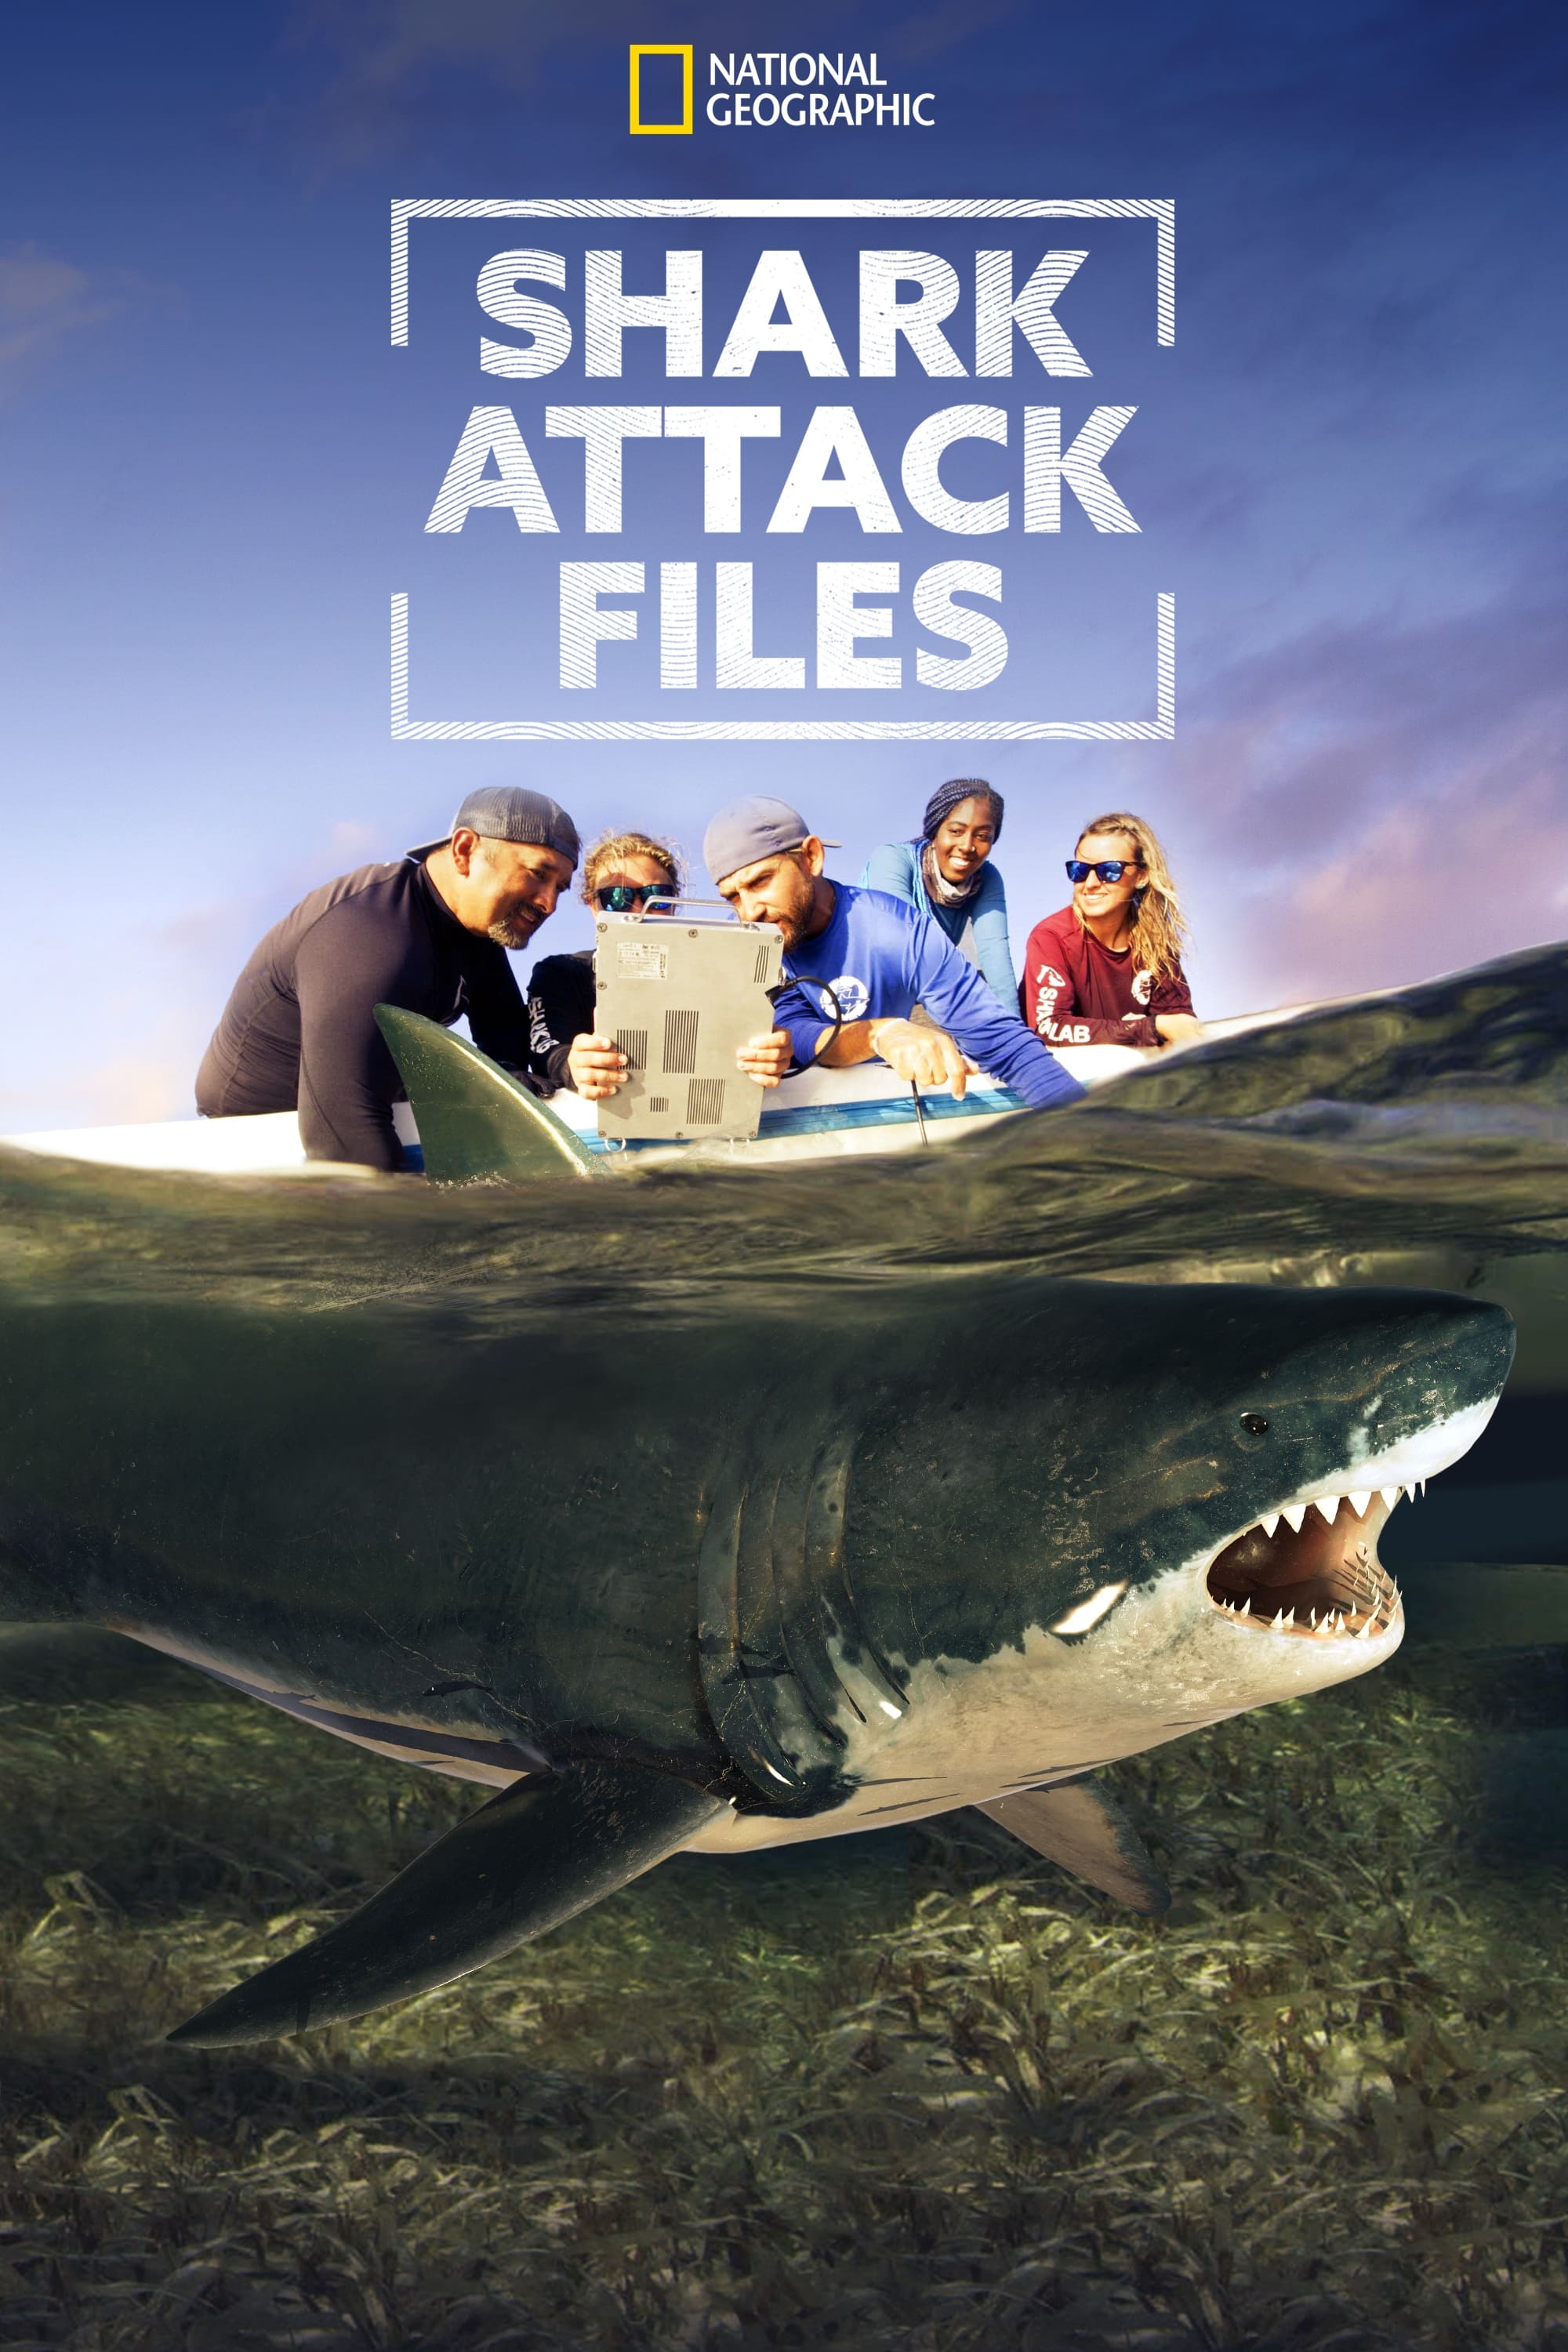 Ataques de tiburones - acceso exclusivo